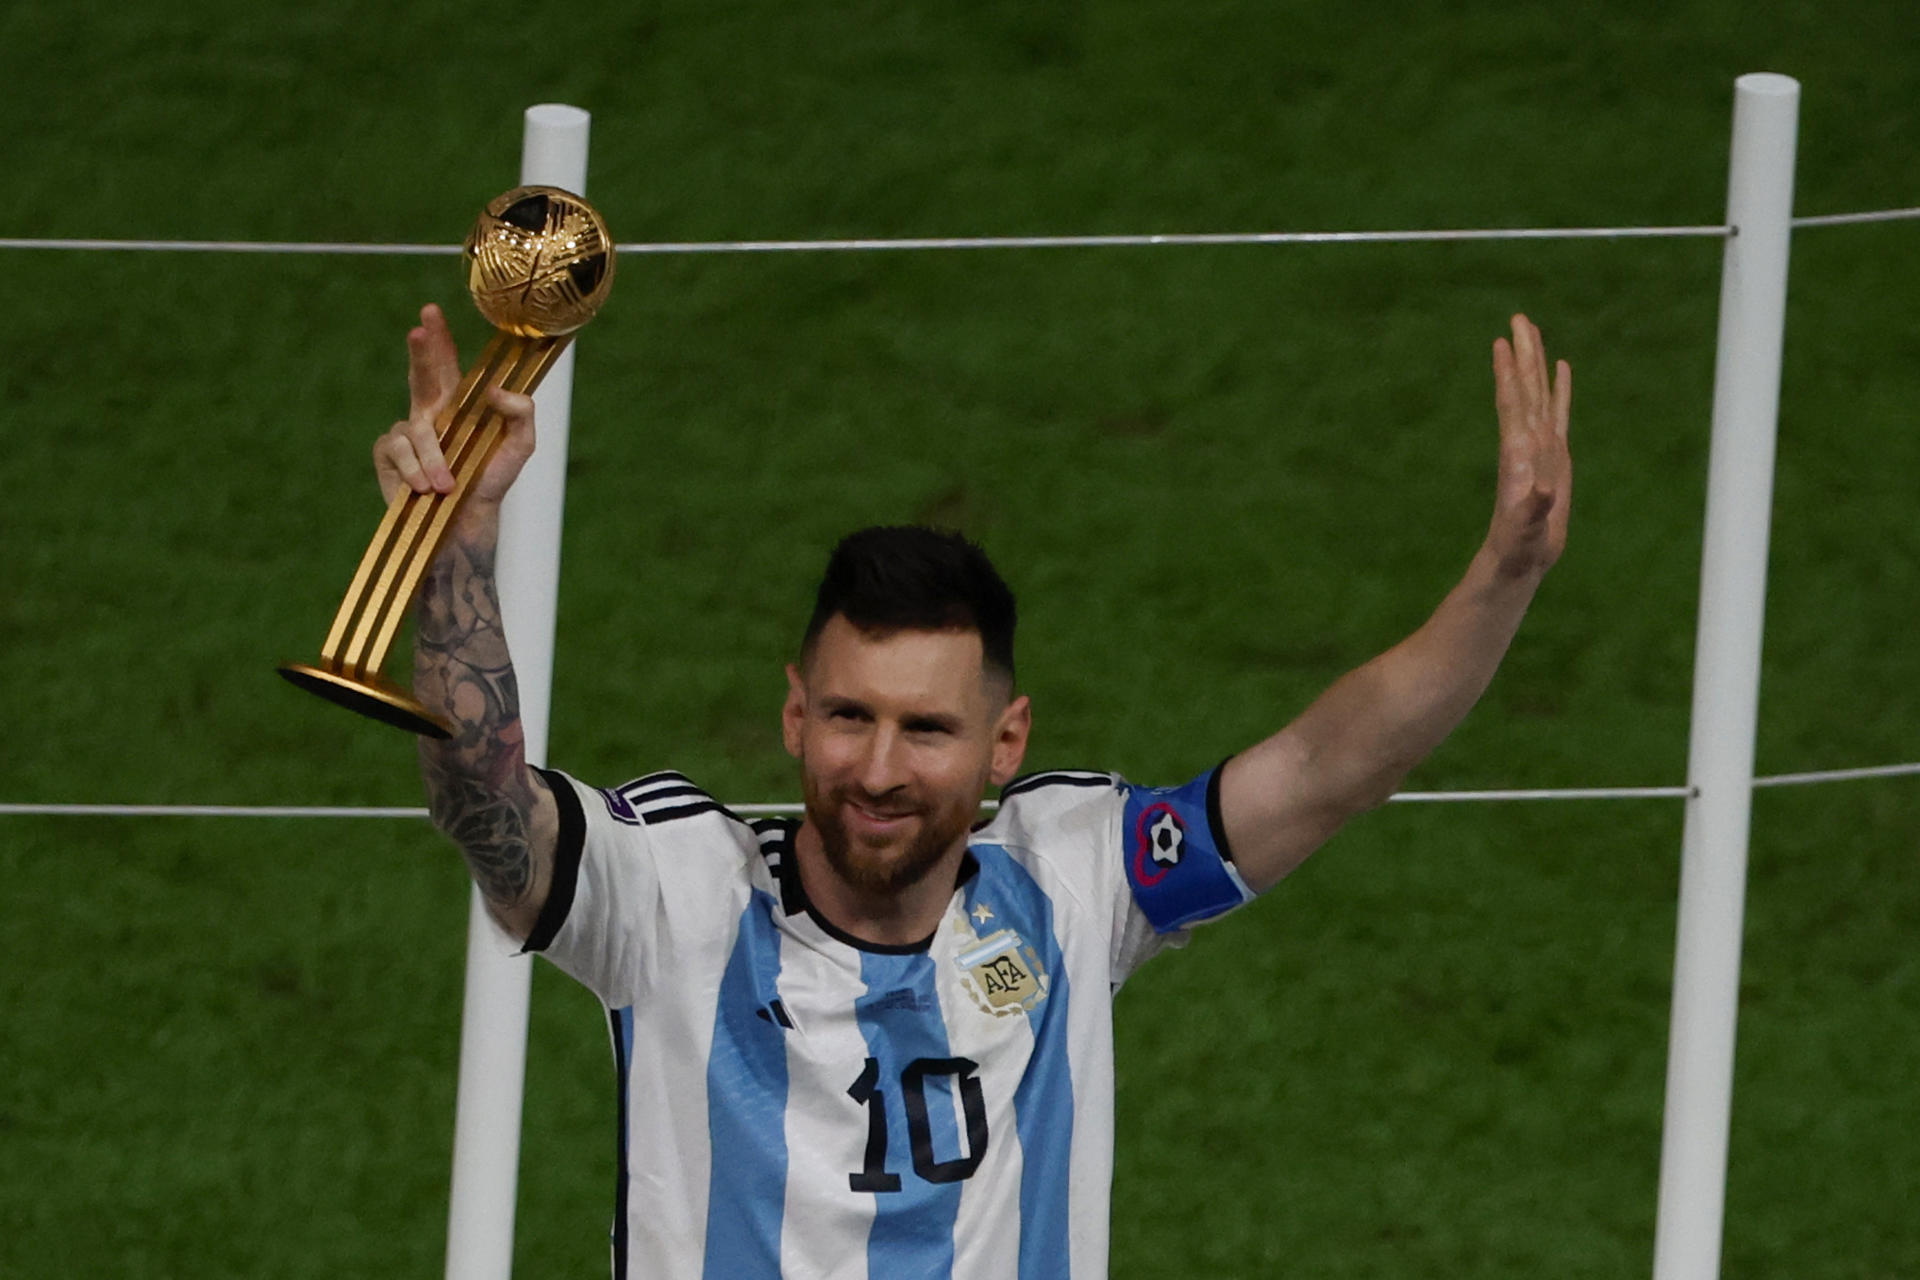 Lionel Messi de Argentina celebra tras ganar la final del Mundial de Fútbol Qatar 2022, en una fotografía de archivo. EFE/ Alberto Estevez